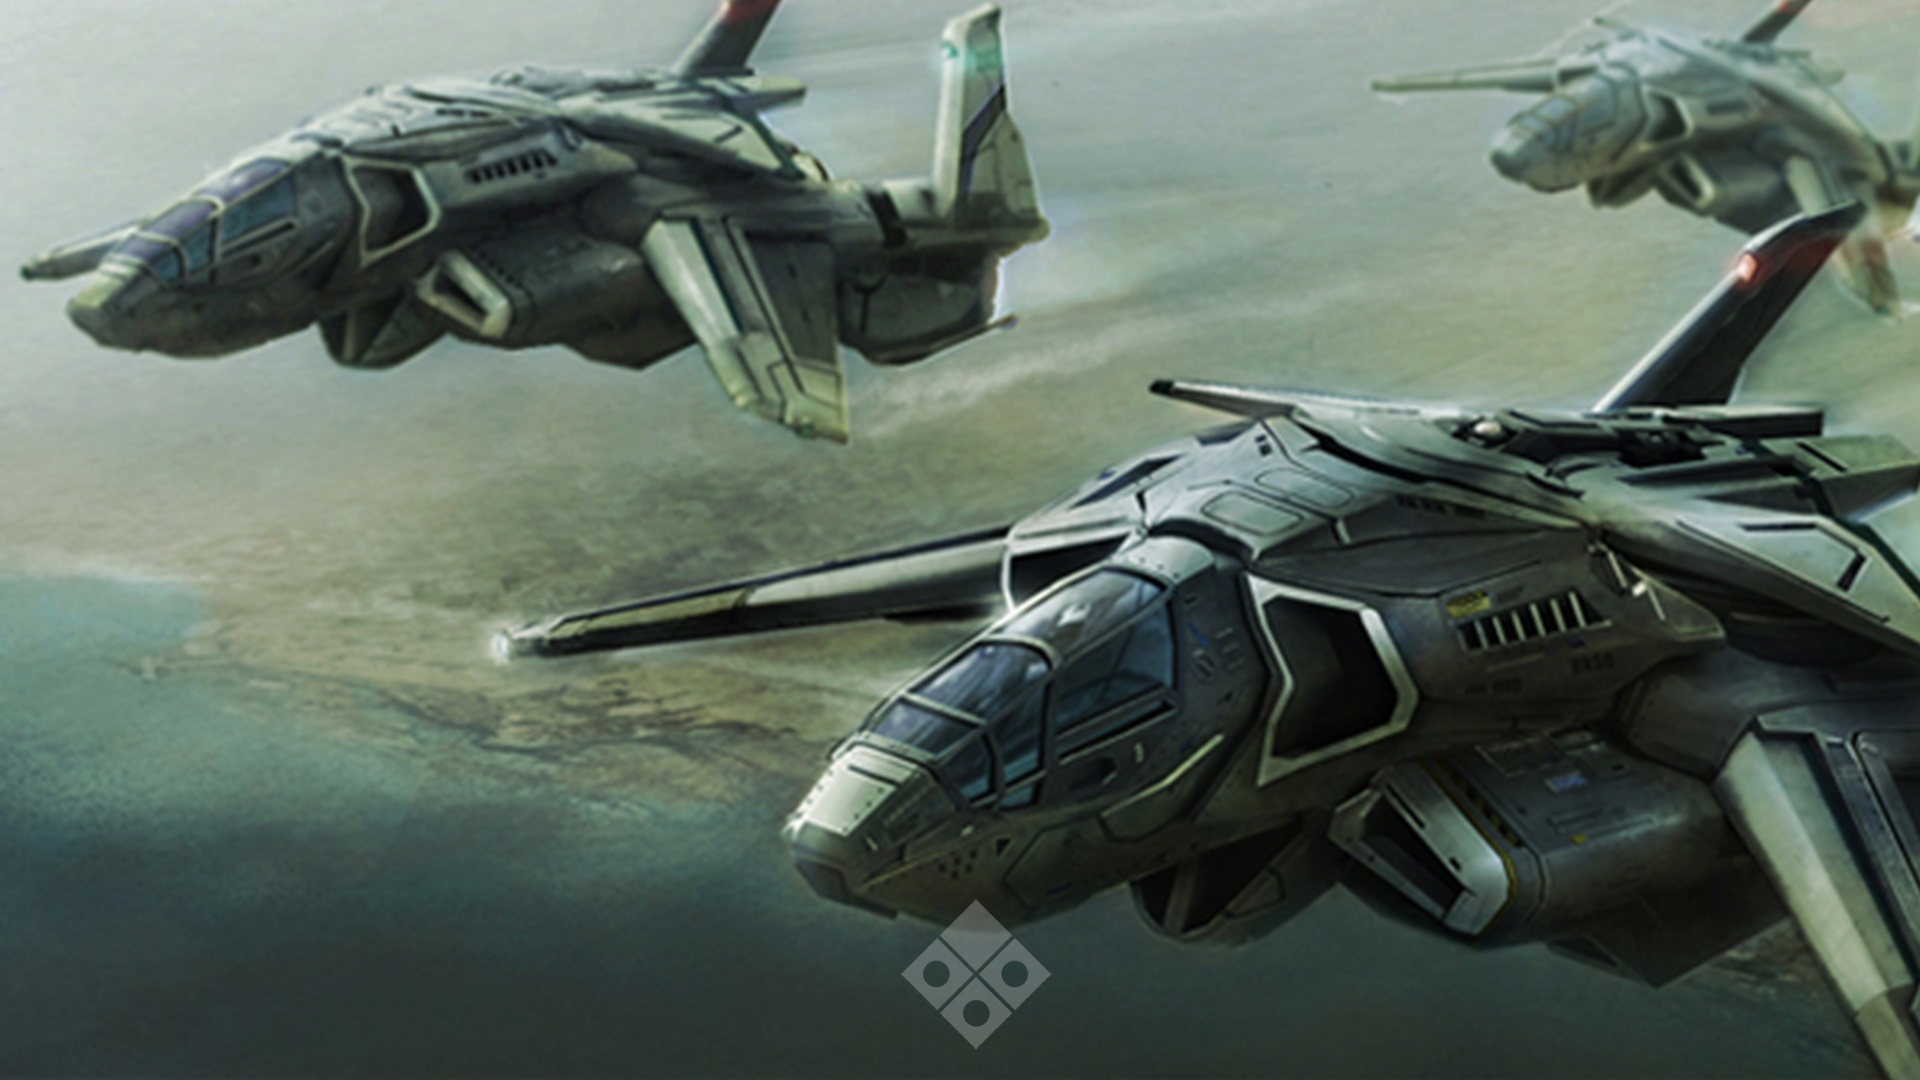 Halo Wars concept art of the Falcata fighter